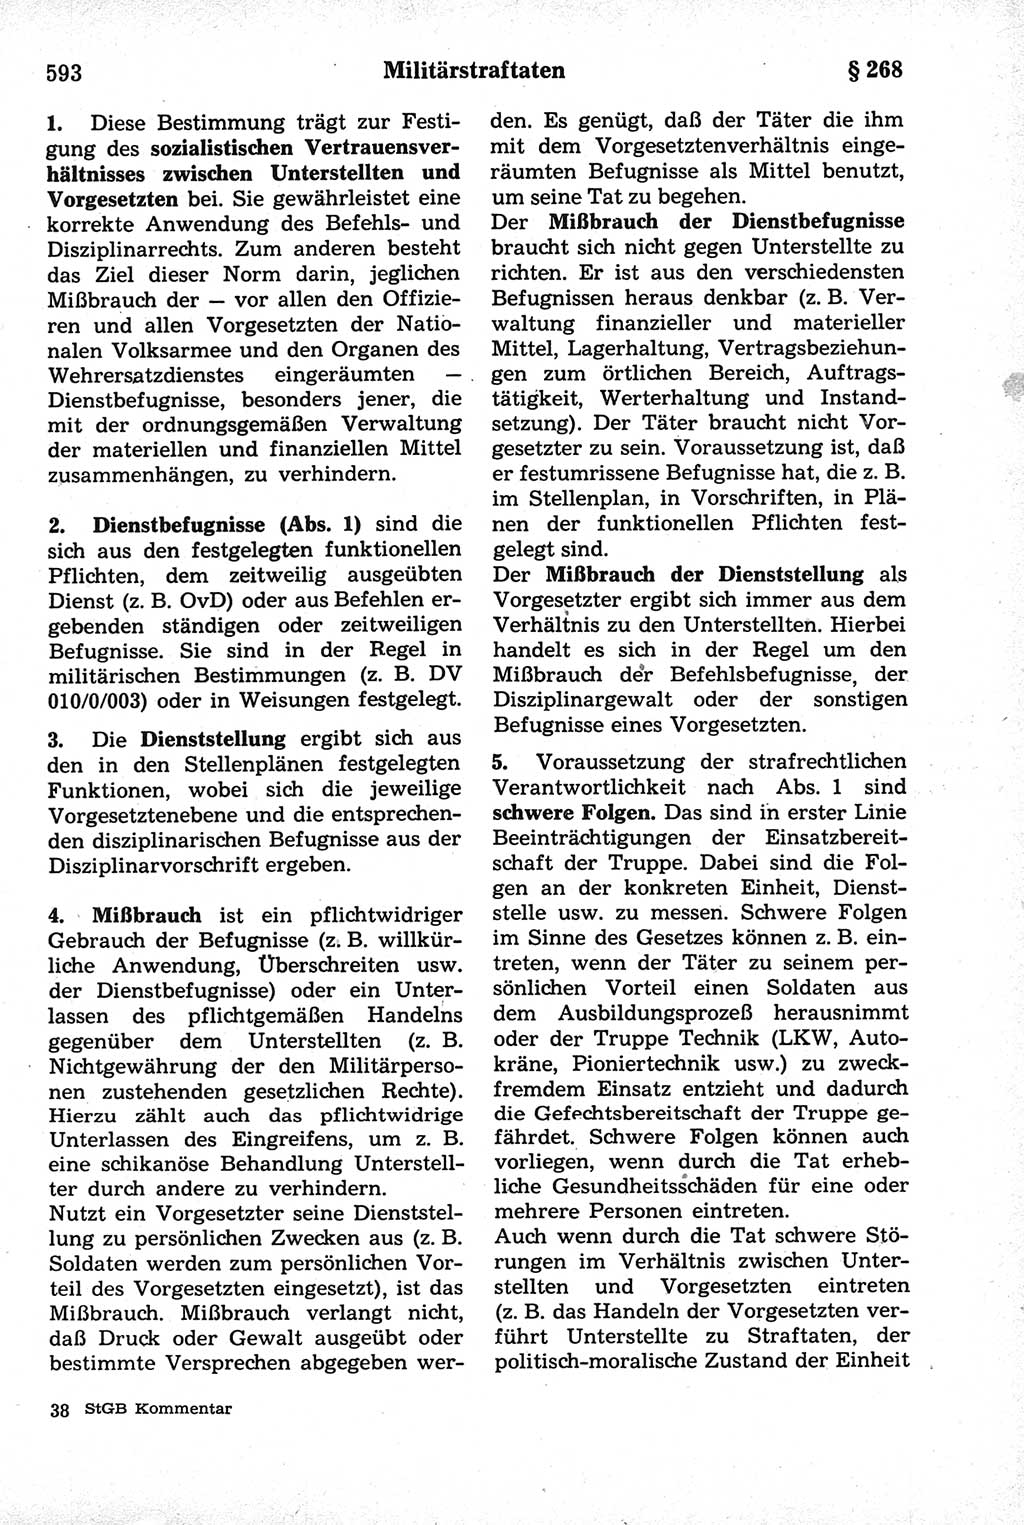 Strafrecht der Deutschen Demokratischen Republik (DDR), Kommentar zum Strafgesetzbuch (StGB) 1981, Seite 593 (Strafr. DDR Komm. StGB 1981, S. 593)